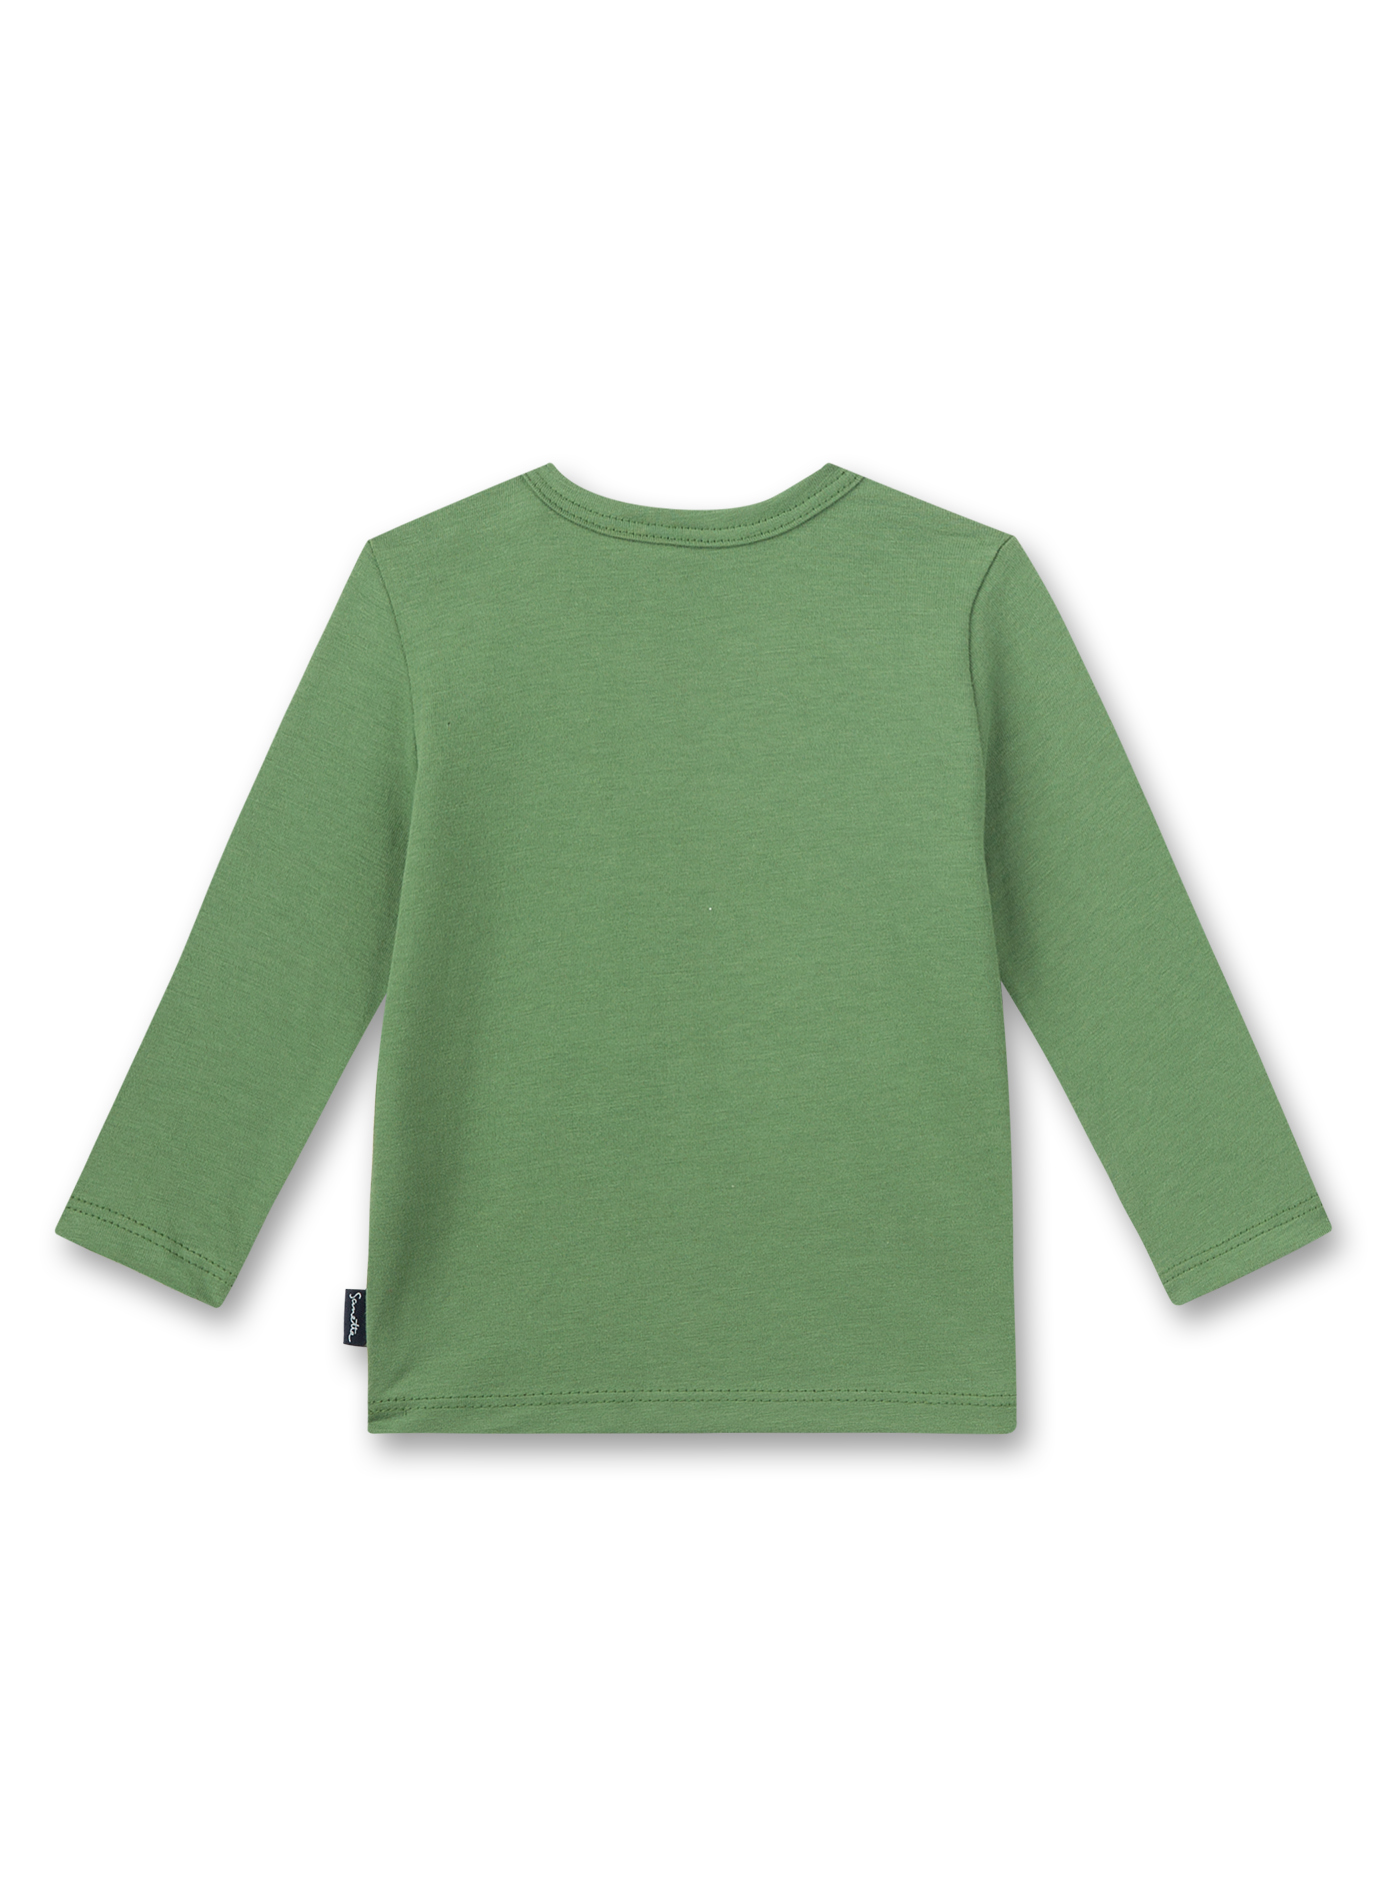 Jungen-Shirt langarm Grün